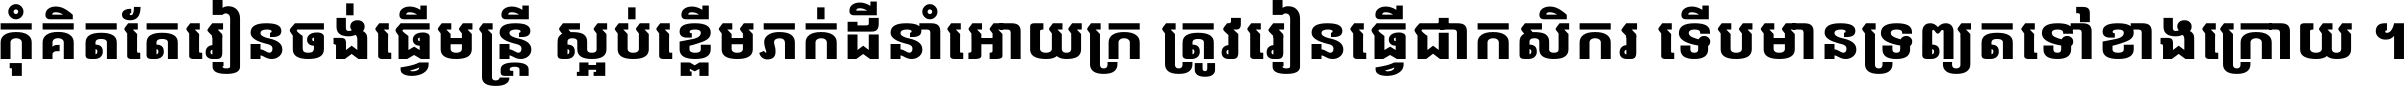 Noto Sans Khmer ExtraBold